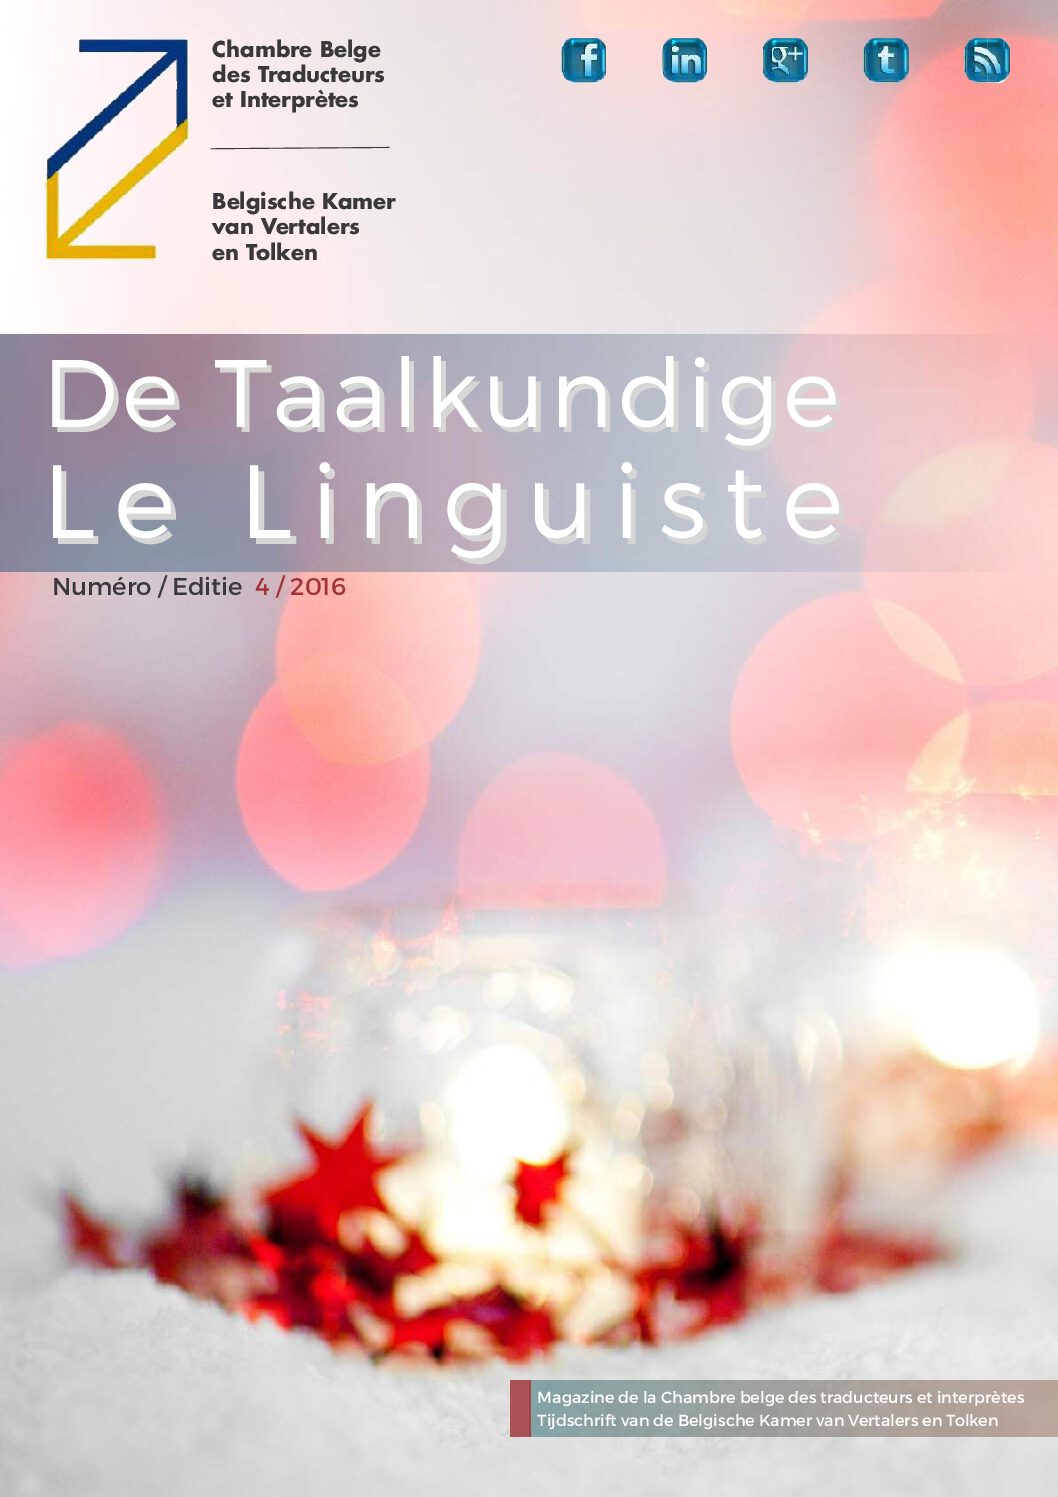 Image de présentation pour le document : Le Linguiste 2016-4